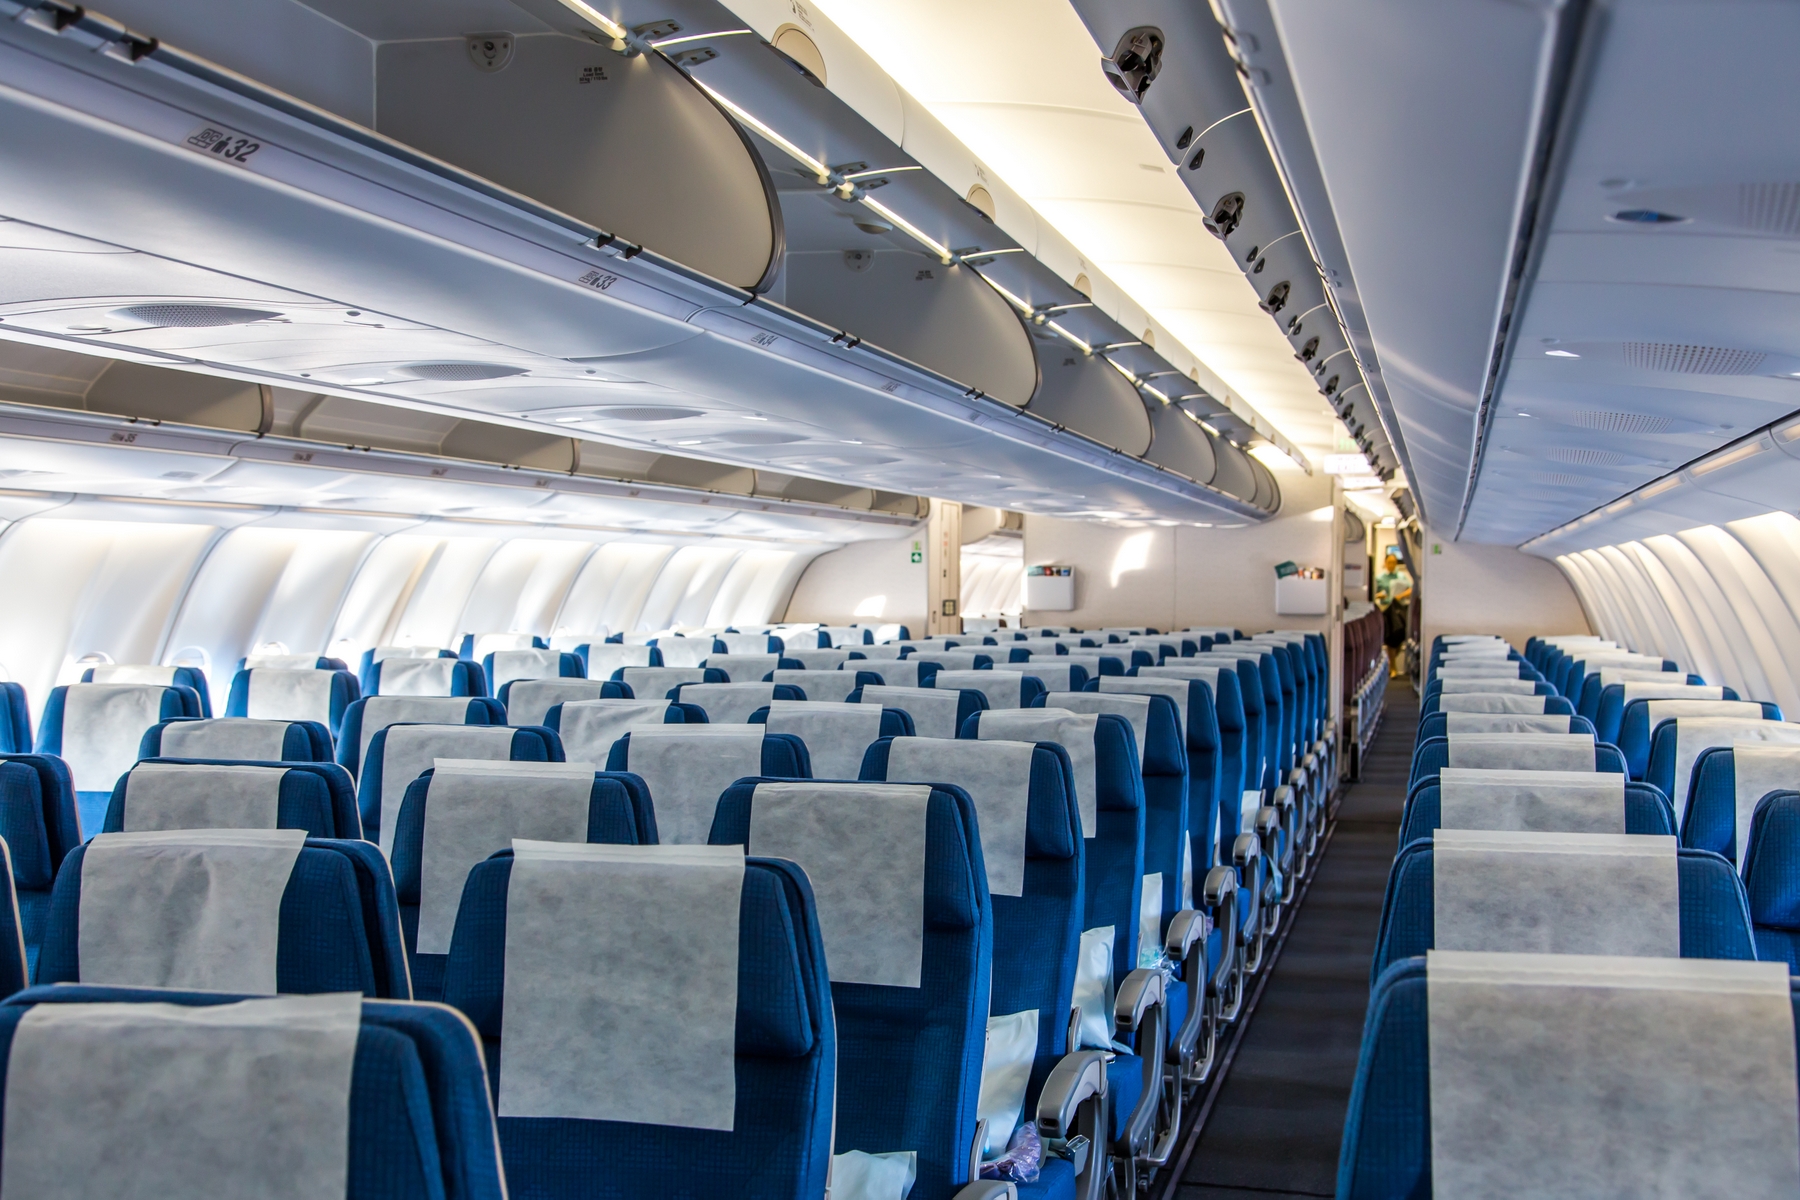 ФАС видит нарушения прав пассажиров в продаже авиабилетов по закрытым направлениям